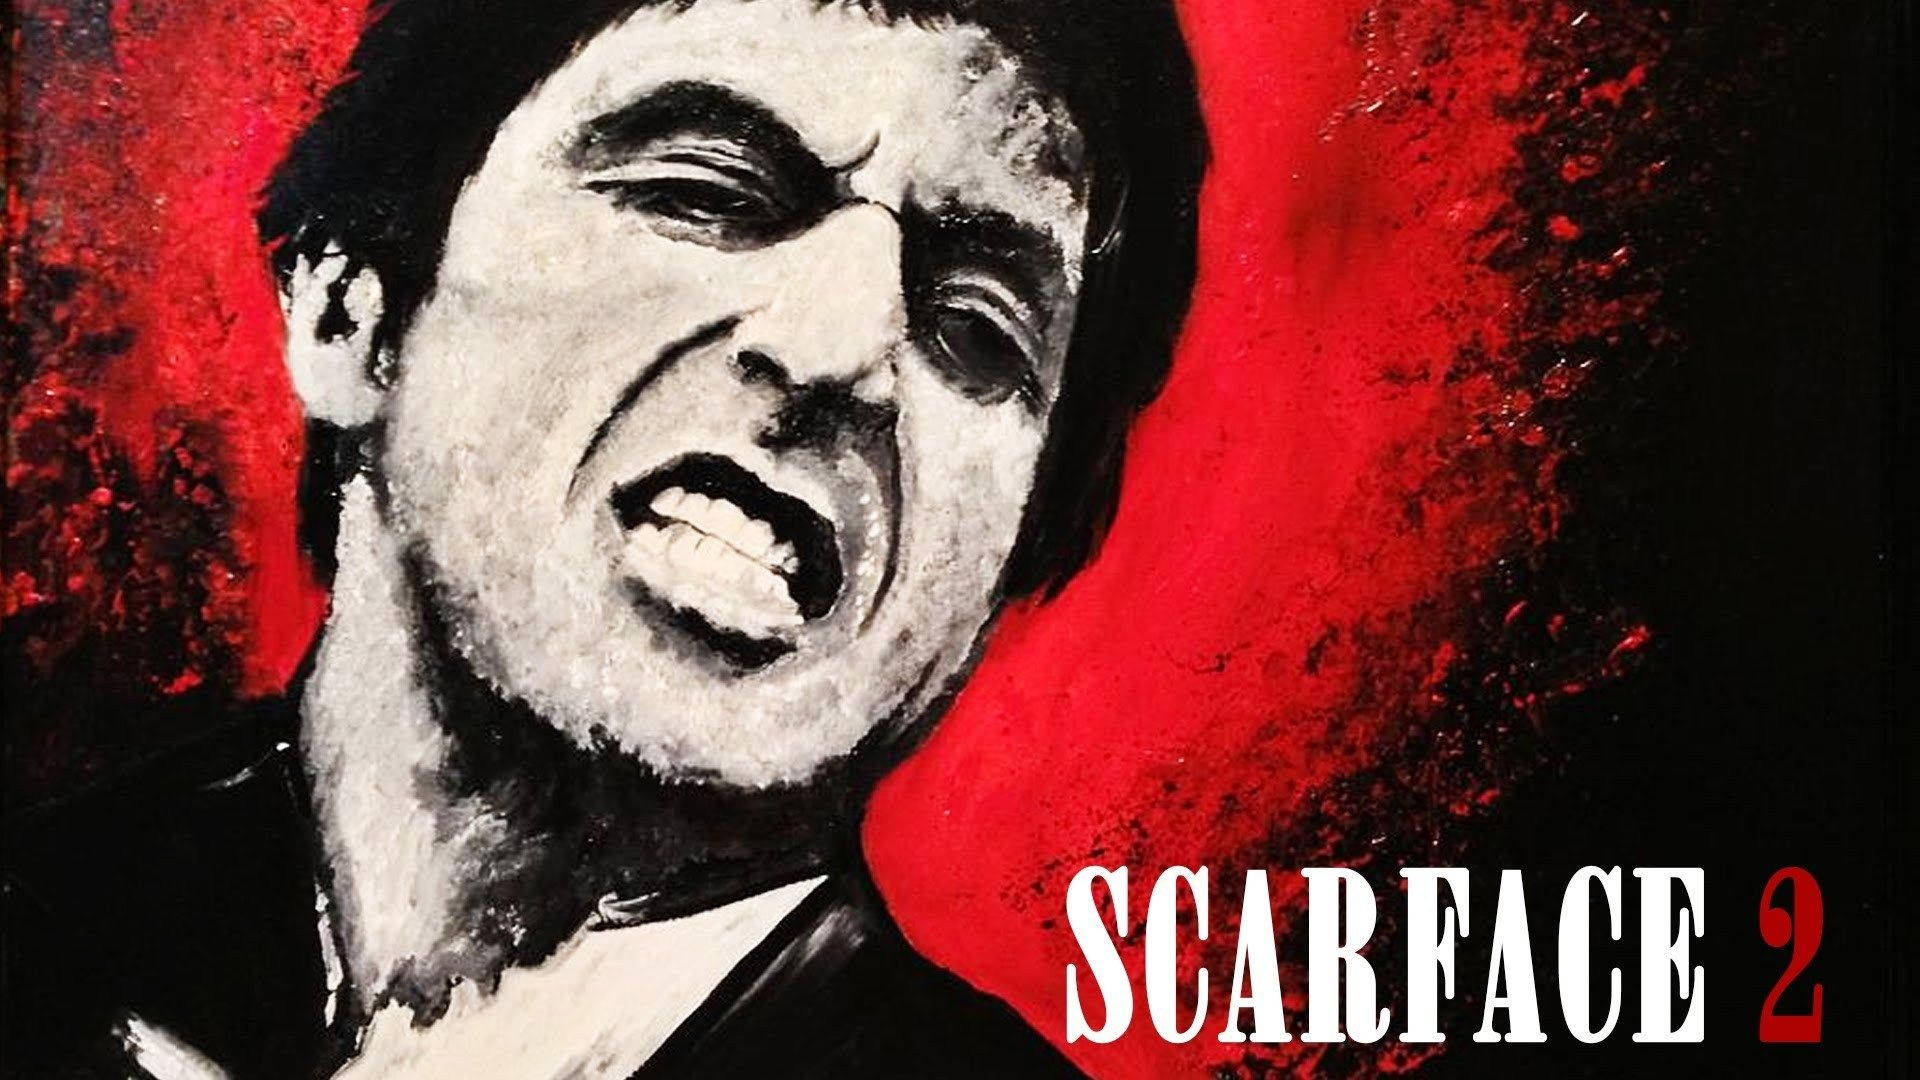 Tony Montana Scarface 2 Wallpaper